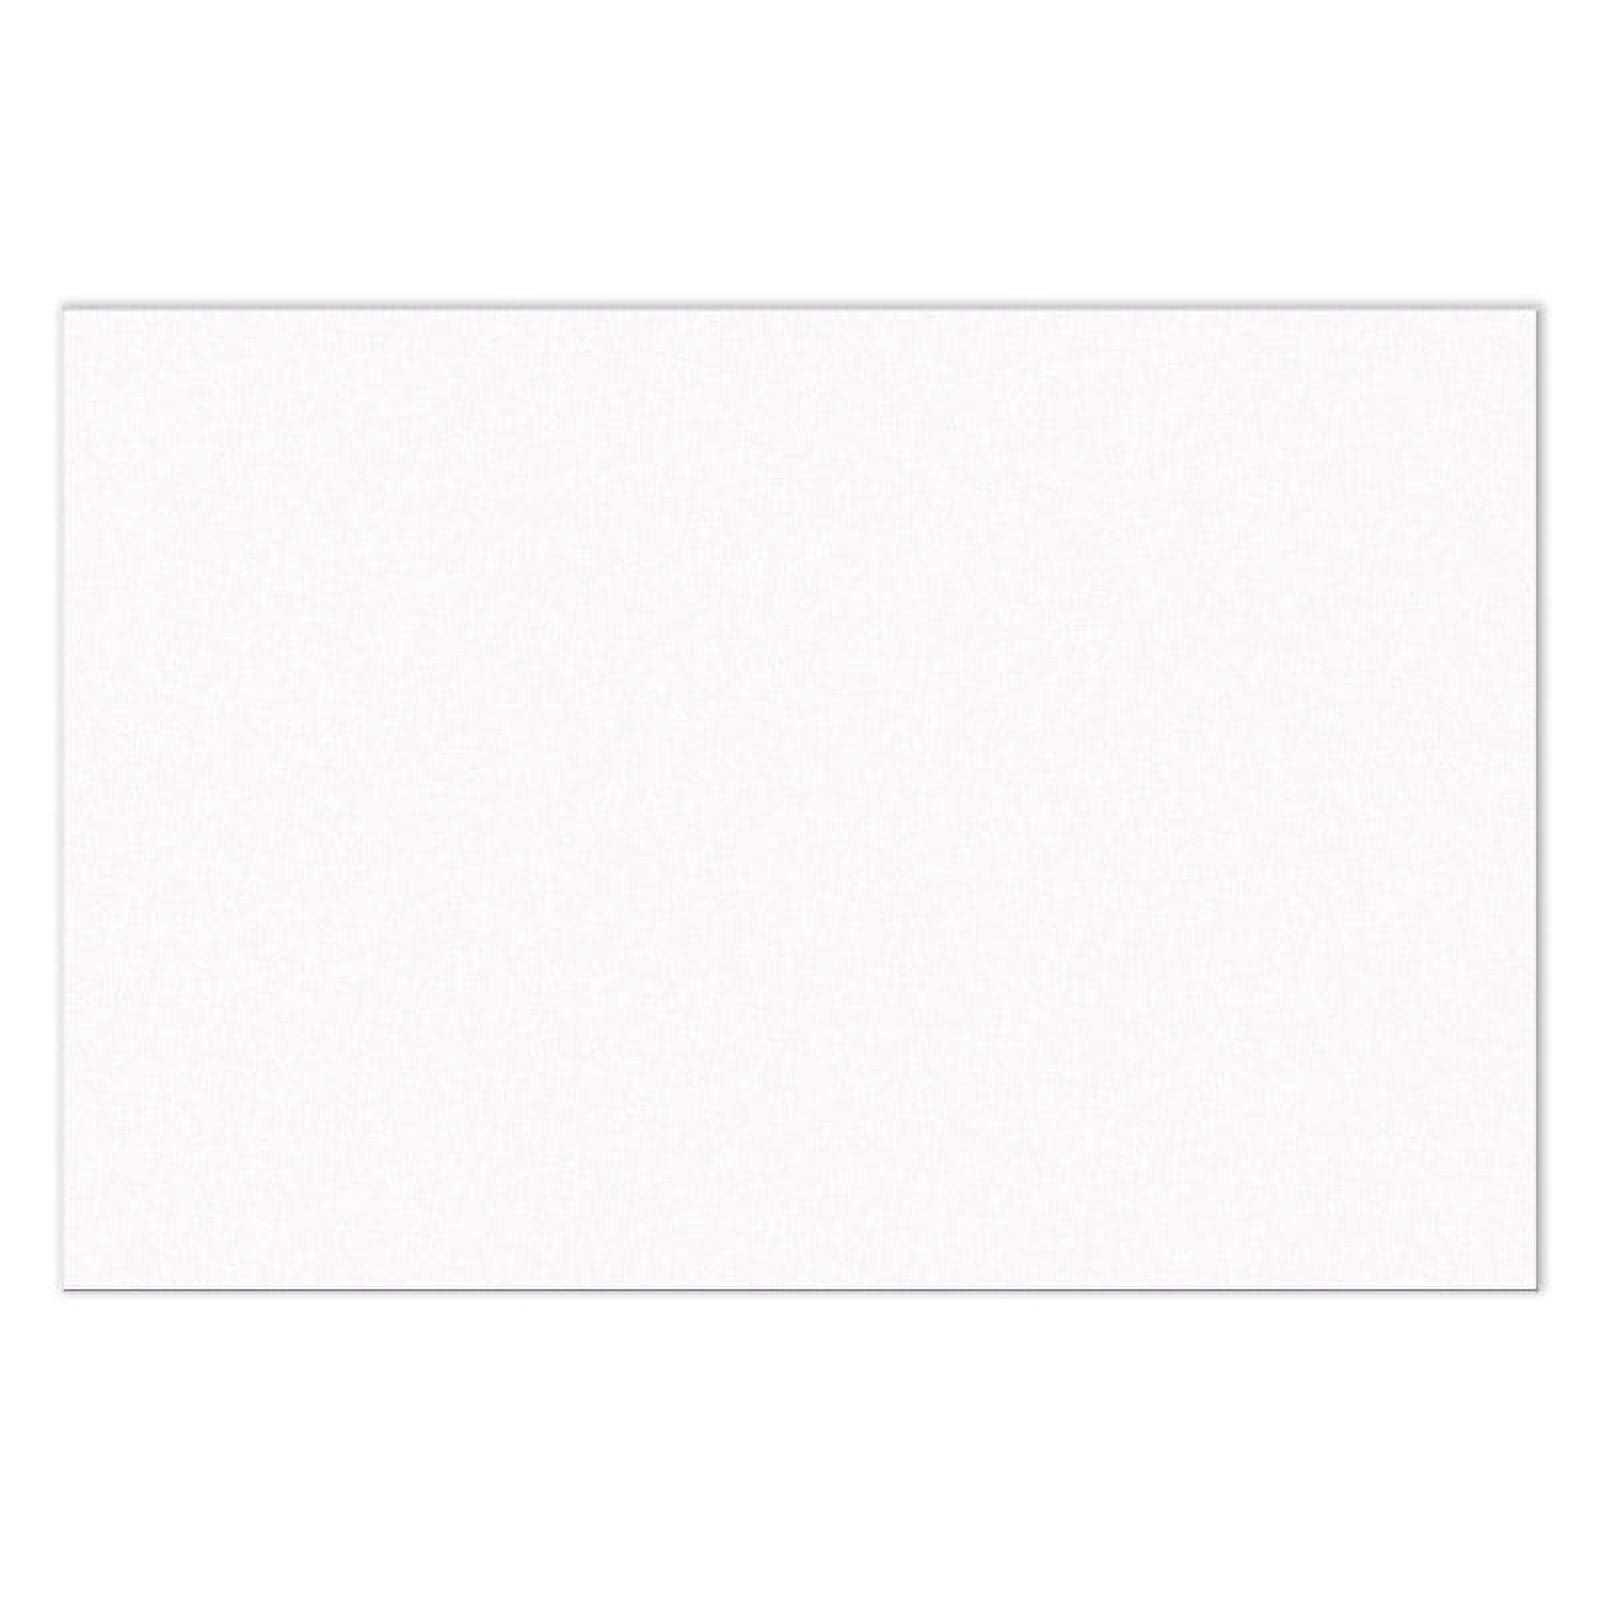 SunWorksÂ® Bright White Construction Paper, 12â€ x 18â€ , 100 Sheets